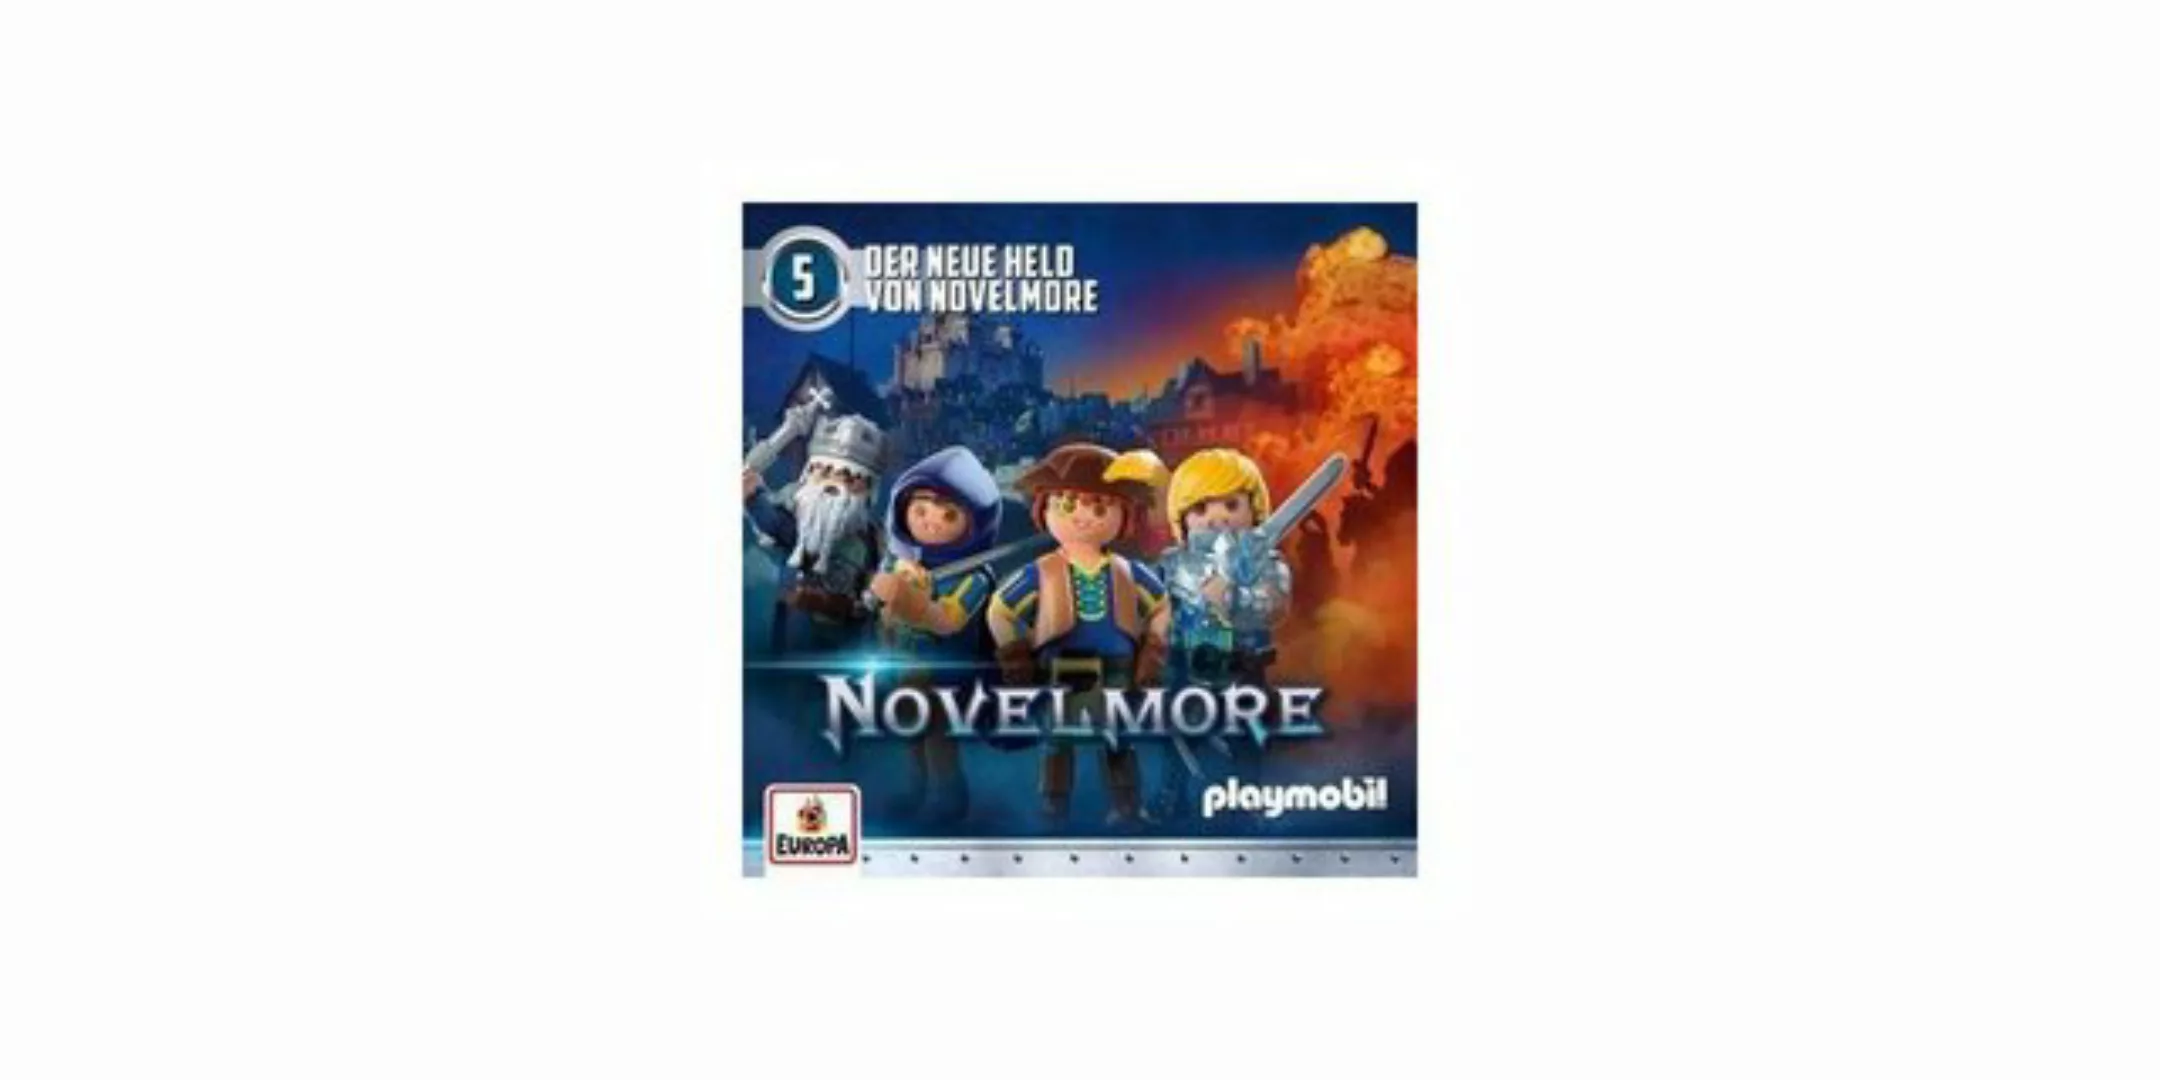 Europa Hörspiel-CD Playmobil Novelmore F.05 - Der neue Held von Novelmore günstig online kaufen